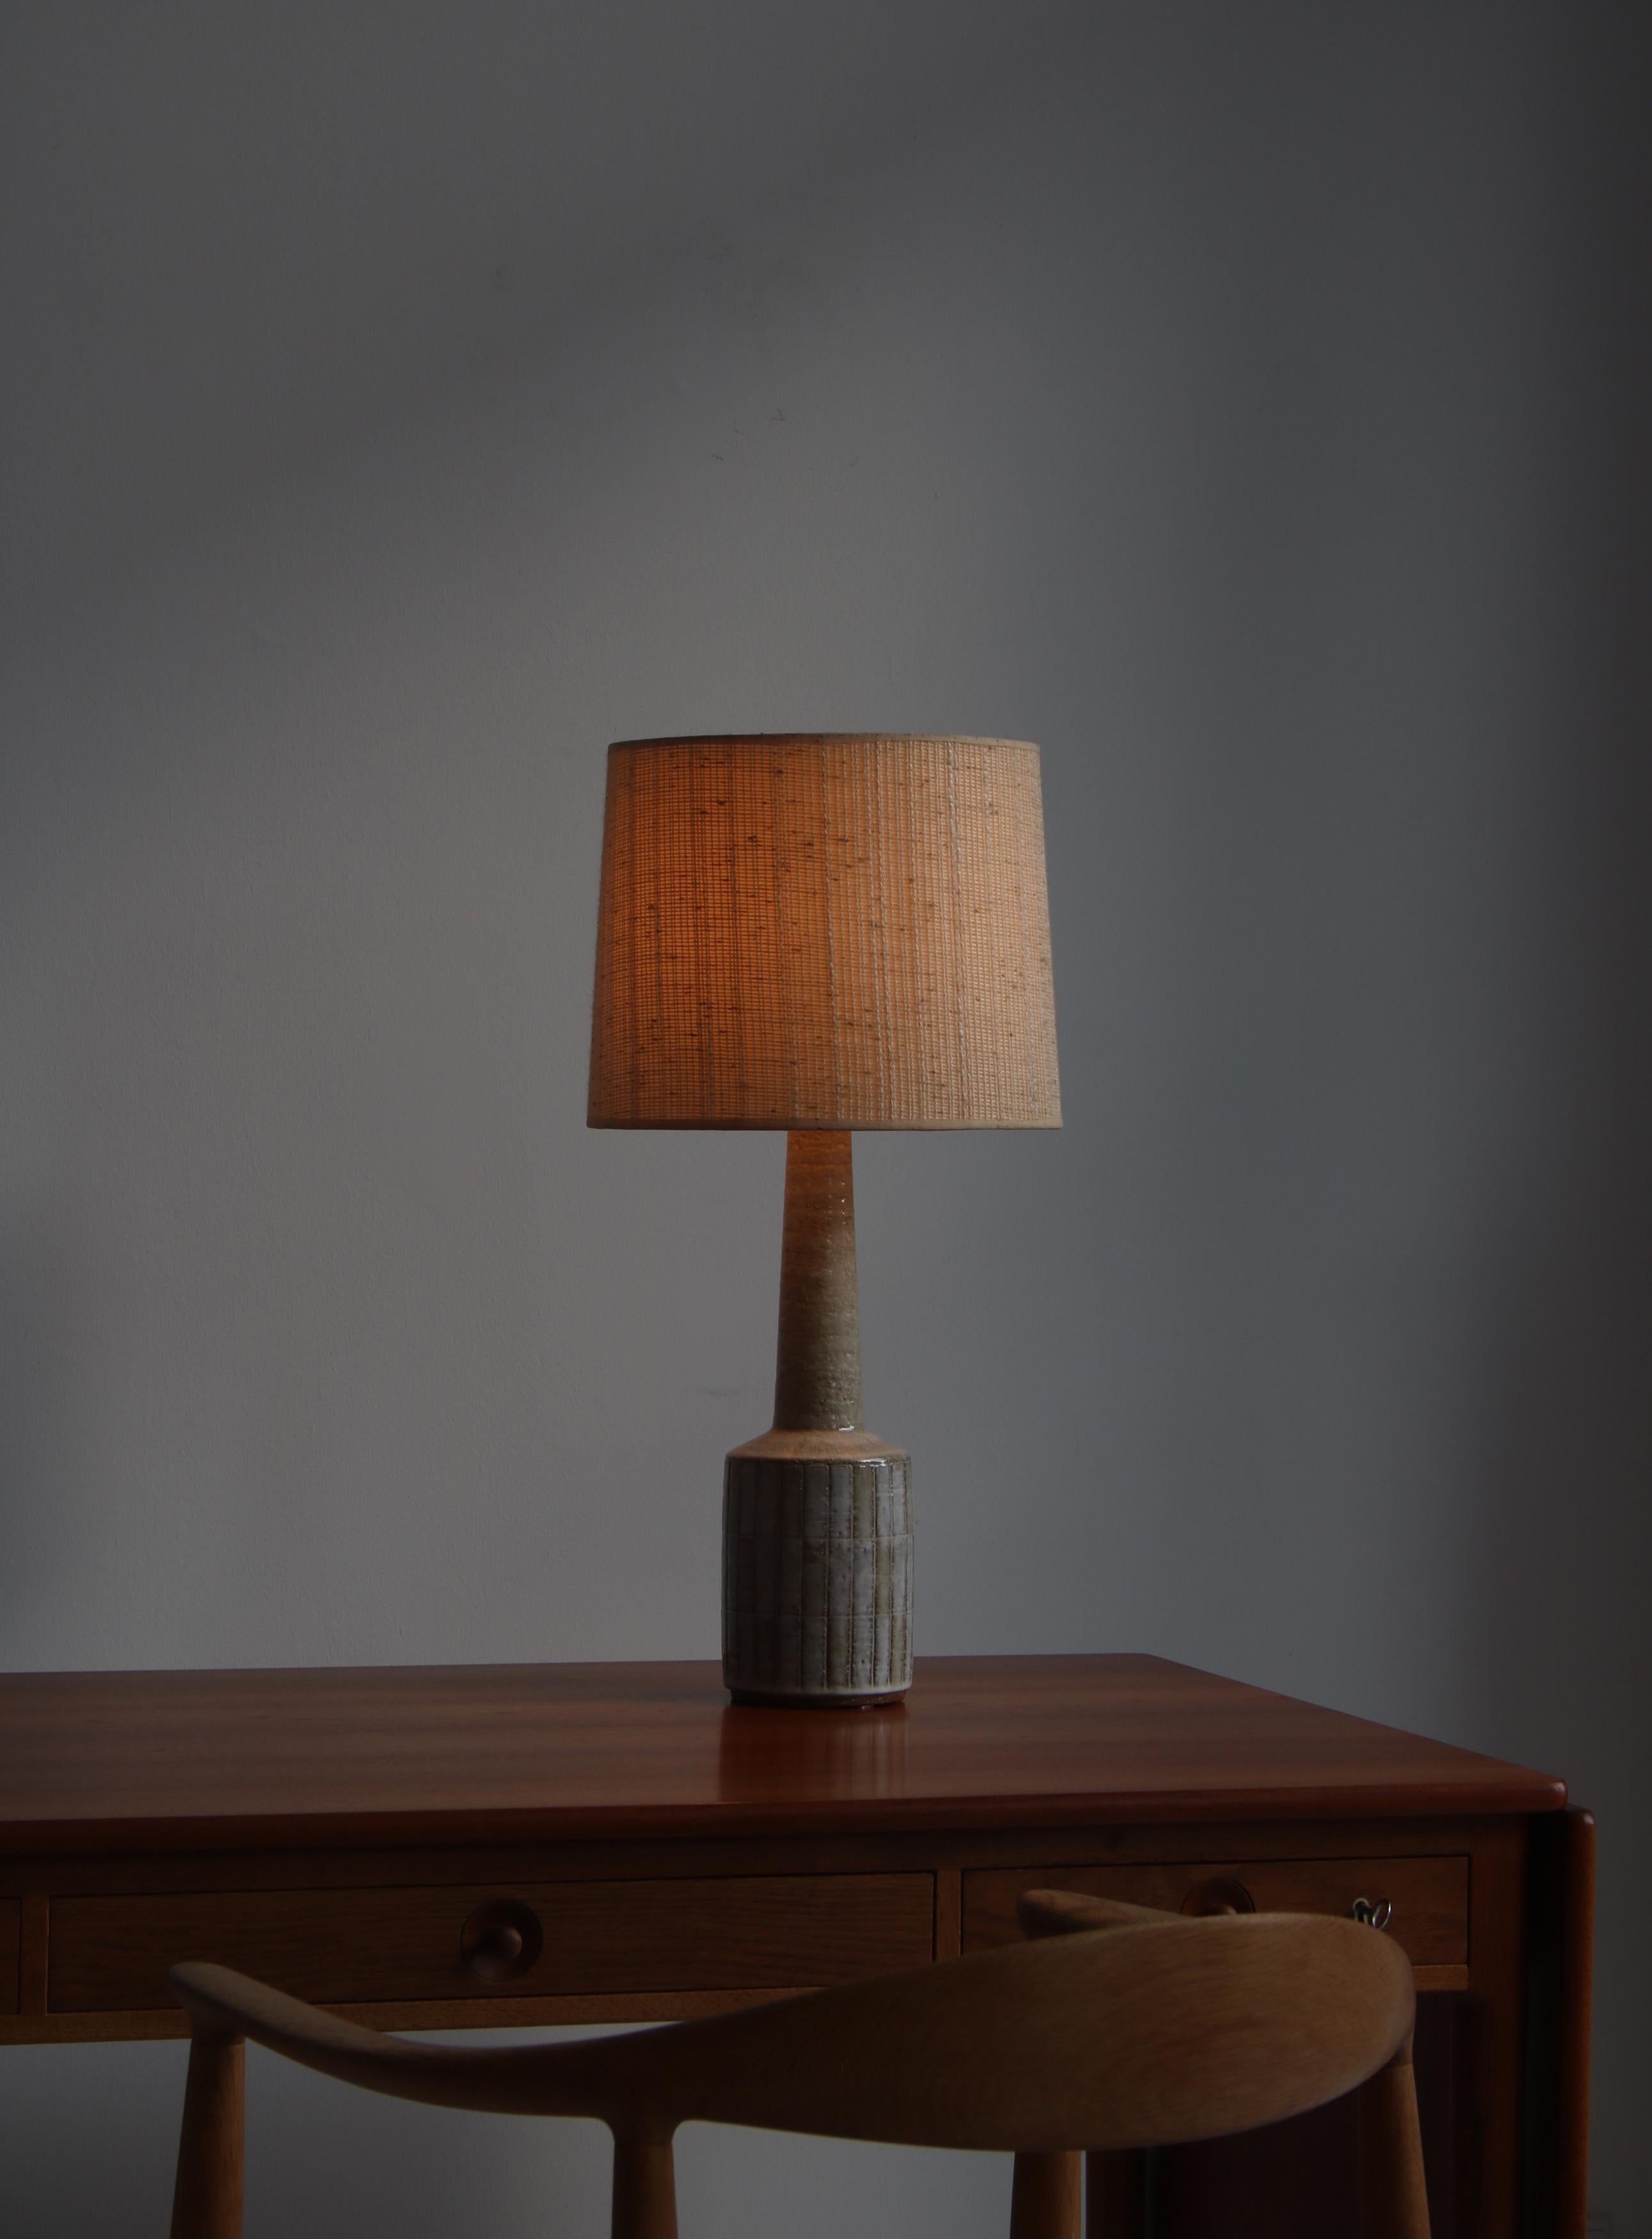 Belle grande lampe de table en grès chamotté à glaçage gris par Per Linneman-Schmidt pour Palshus, Danemark. Fabriqué dans les années 1960. Marqué en dessous par le fabricant.
Montré avec l'abat-jour original en lin et un nouvel abat-jour en